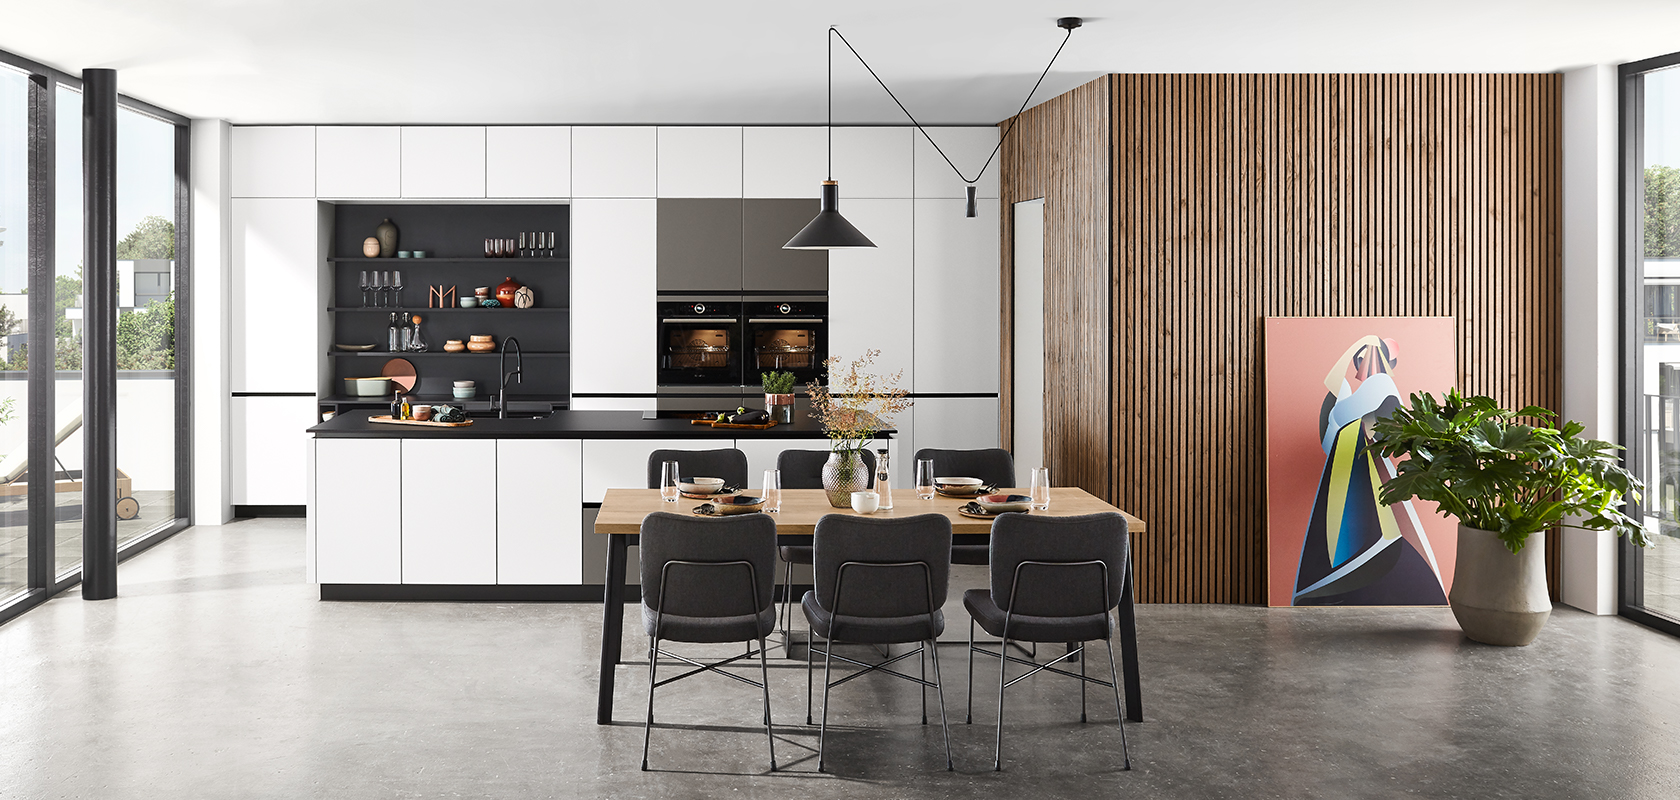 Interior de cocina moderna con gabinetes elegantes en blanco y negro, acentos de madera y un área de comedor con muebles elegantes bajo luces colgantes elegantes.